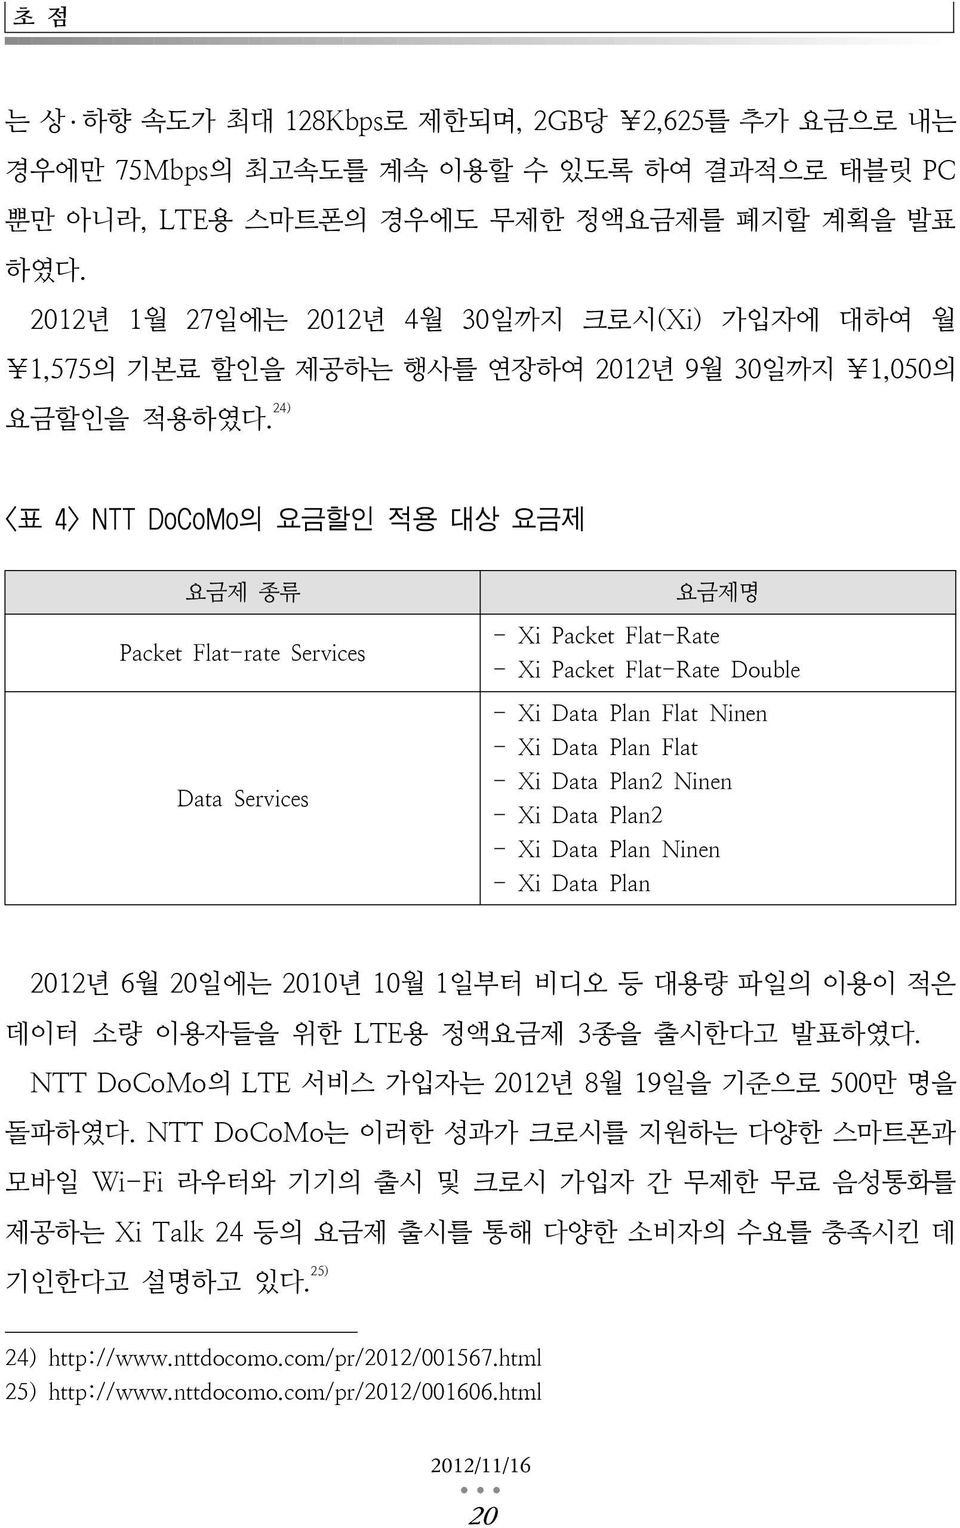 24) <표 4> NTT DoCoMo의 요금할인 적용 대상 요금제 요금제 종류 Packet Flat-rate Services Data Services 요금제명 - Xi Packet Flat-Rate - Xi Packet Flat-Rate Double - Xi Data Plan Flat Ninen - Xi Data Plan Flat - Xi Data